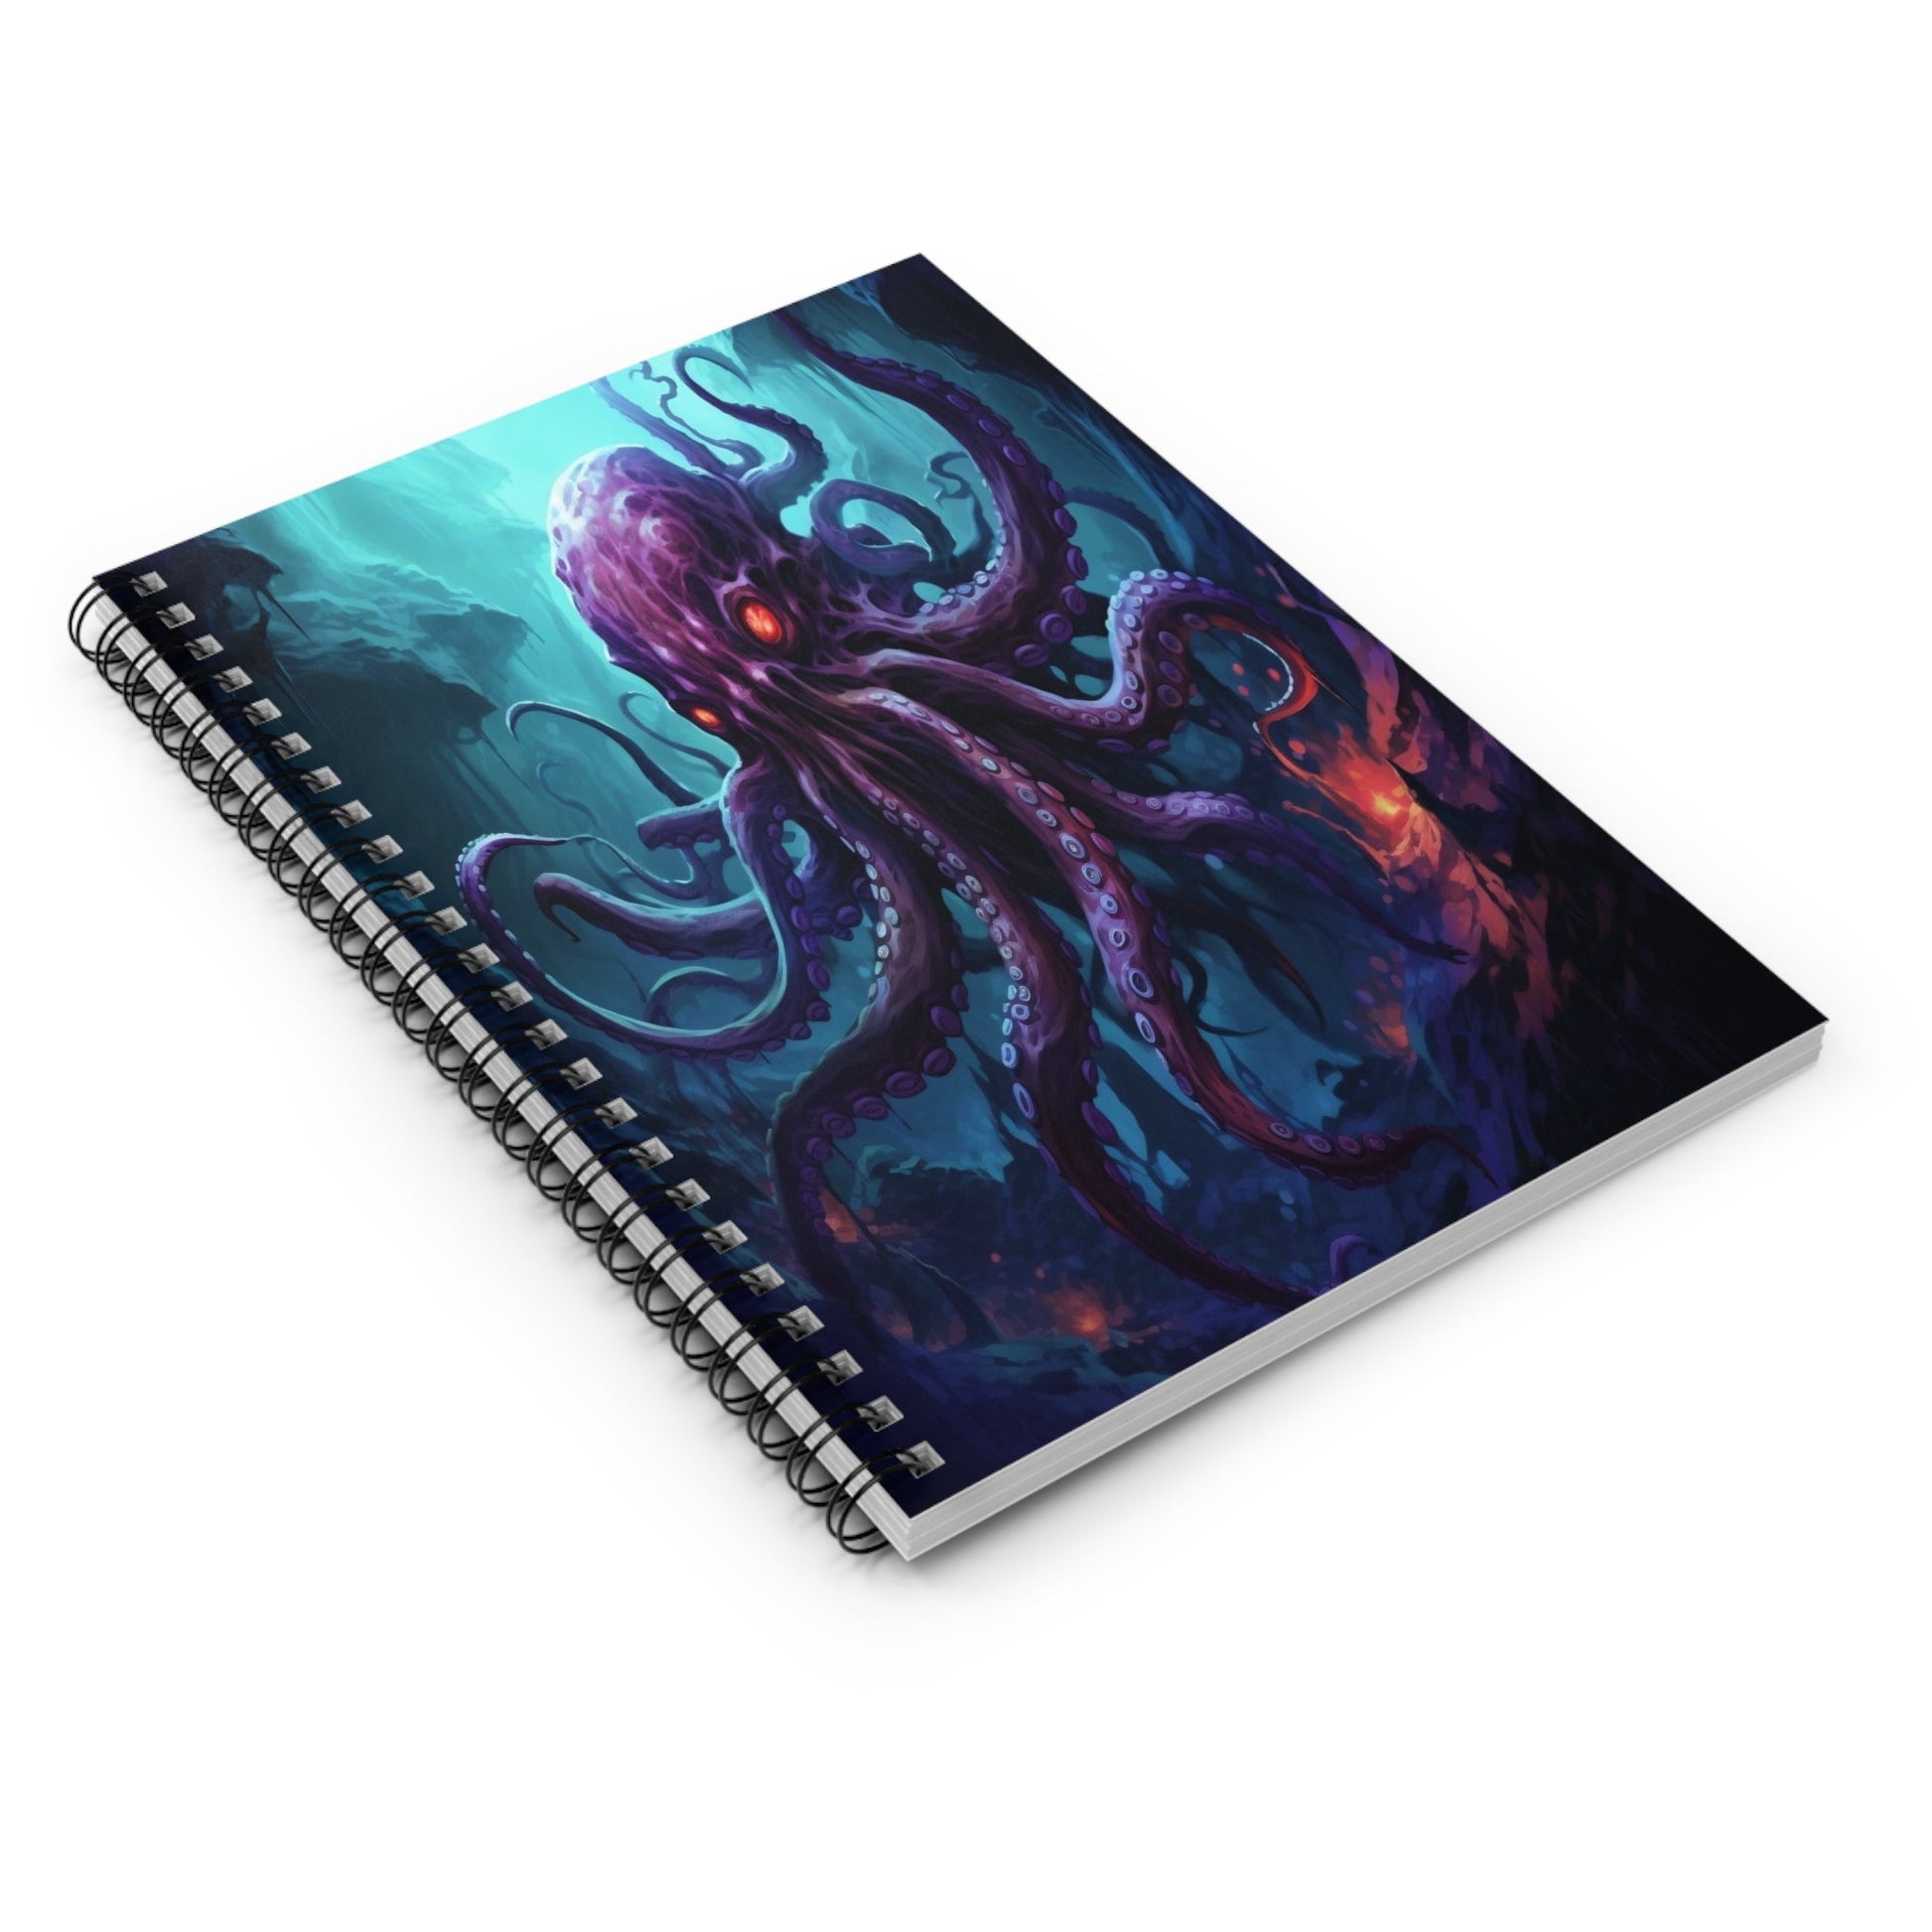 Abyssal Kraken Spiral Notebook MysMuse - Premium Spiral Notebook from MysMuse - Just $14.99! Shop now at Mysterious Muse